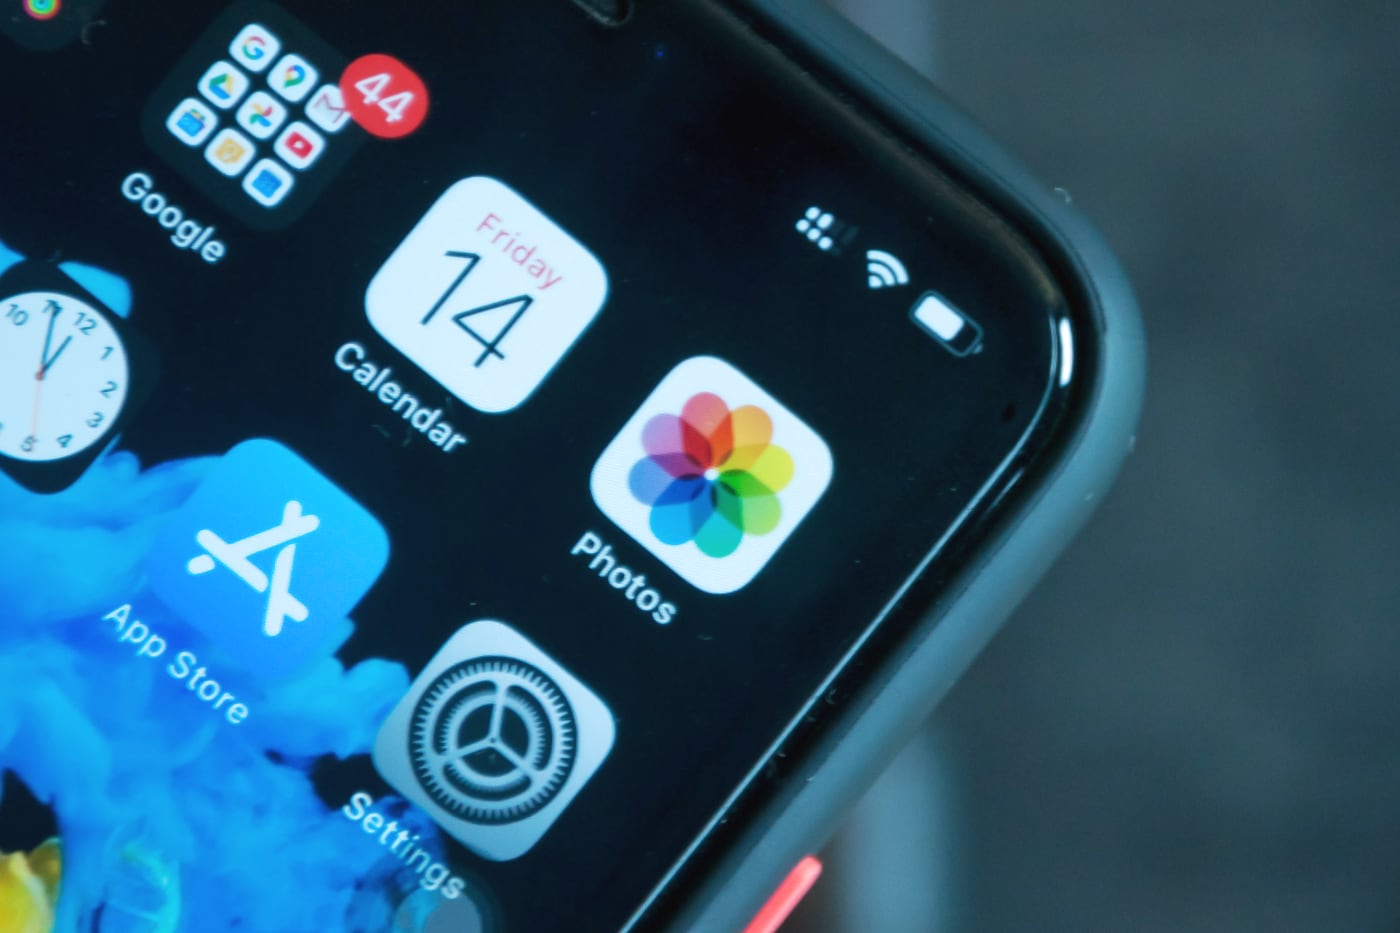 Apple будет сканировать iPhone владельца, чтобы найти запрещенные фотографии и сообщить об этом в полицию